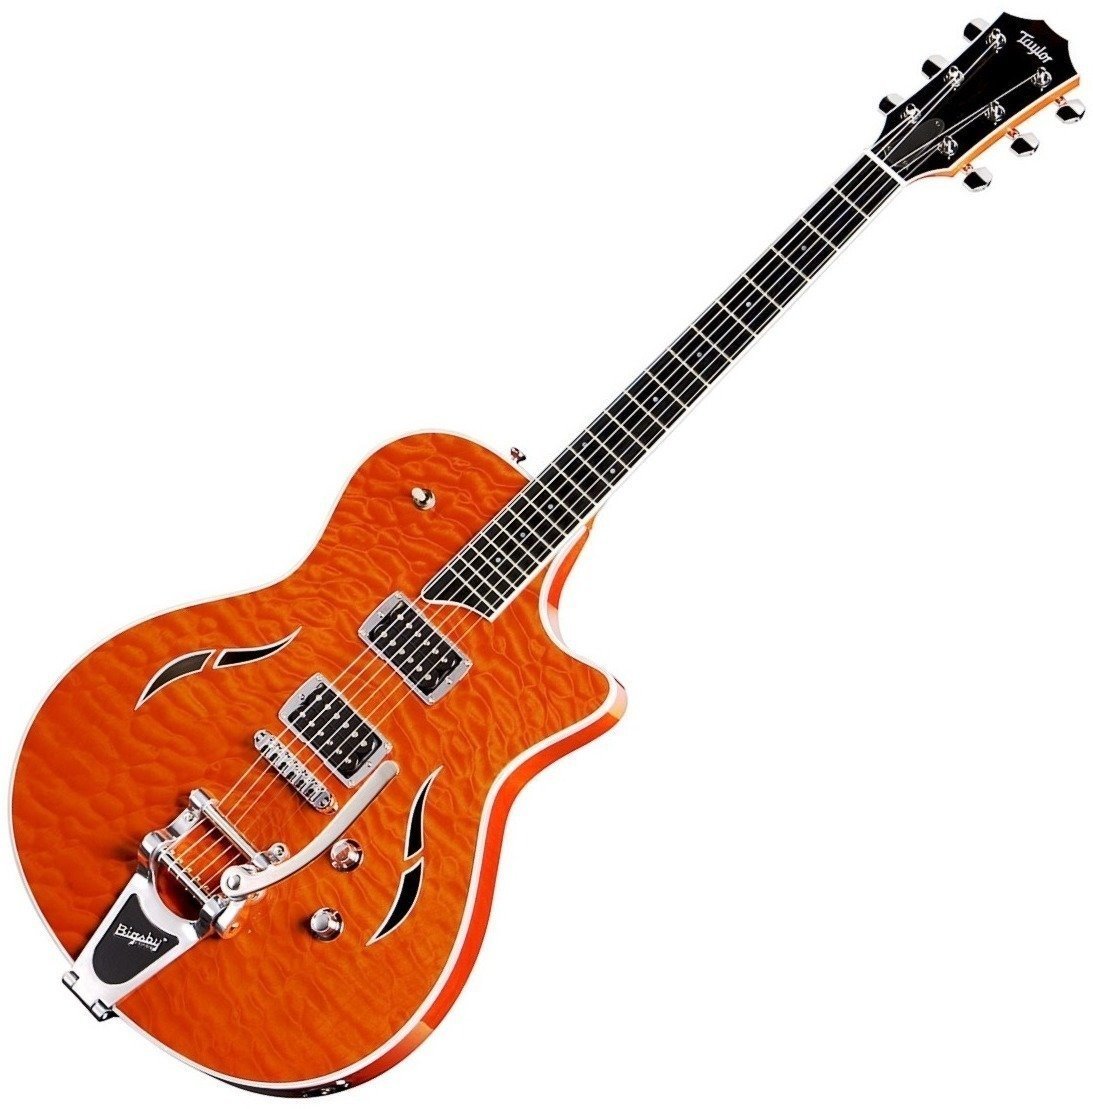 Semiakustická kytara Taylor Guitars T3/B Orange